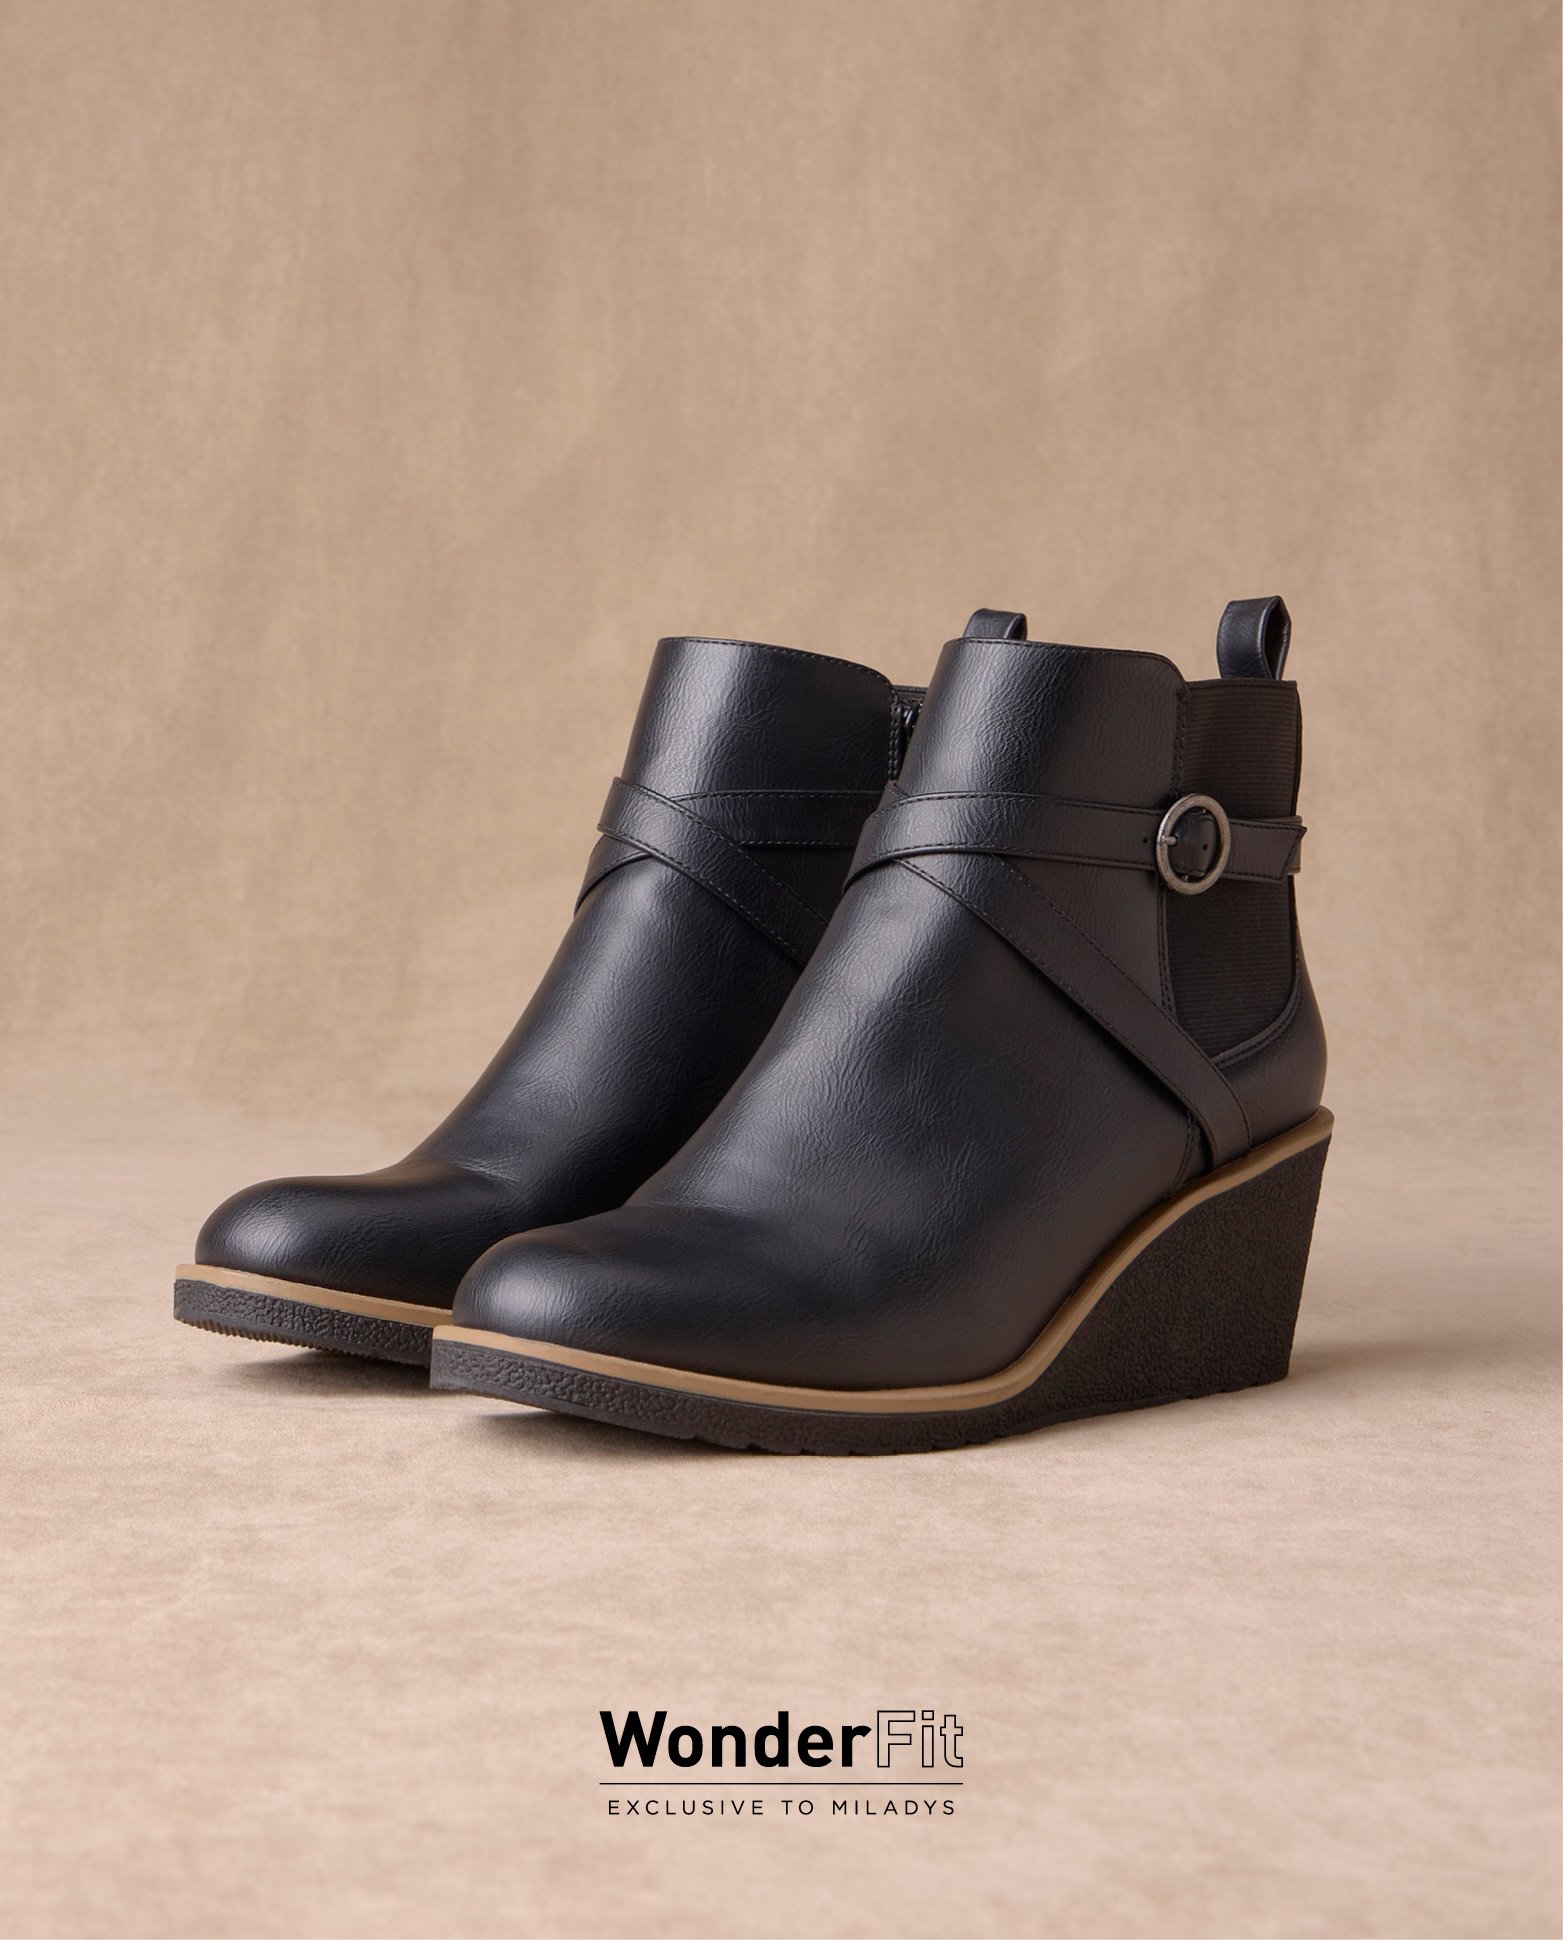 Shop Wonderfit footwear online at Miladys